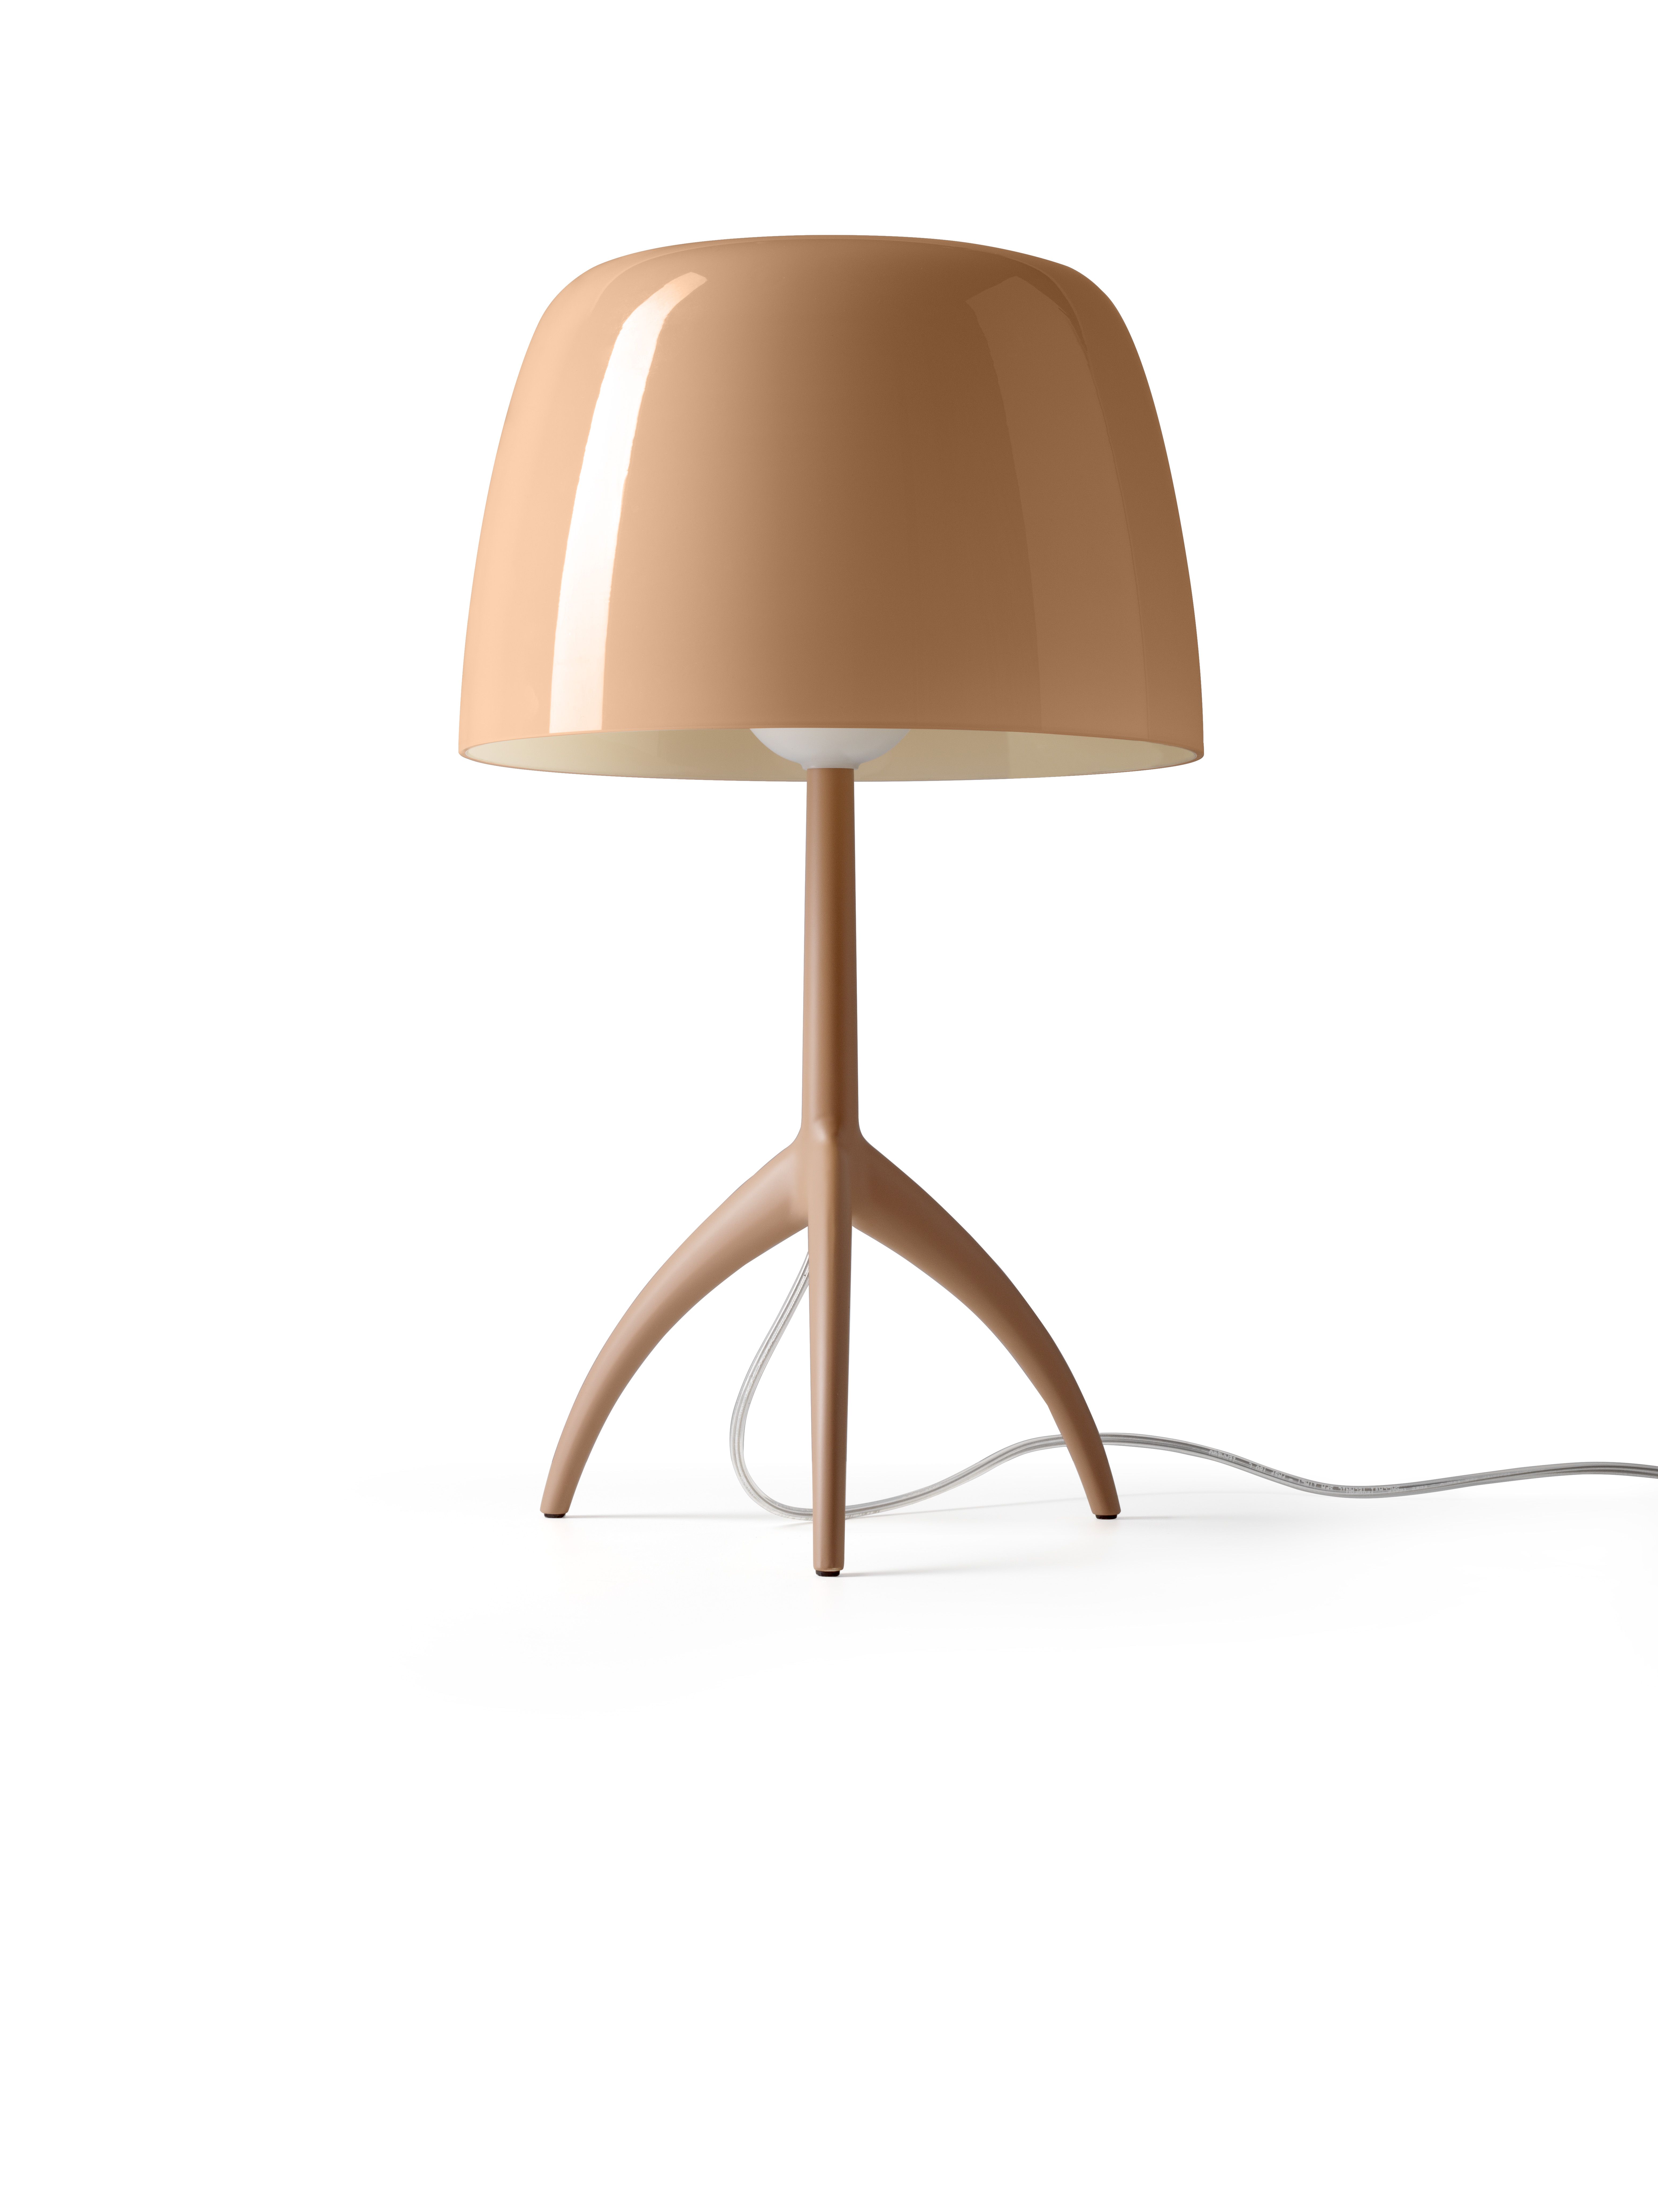 Bellissima Lampada moderna da comodino camera da letto UFO MONTATA Luce da  lettura e relax Abatjour di design con lampadina led